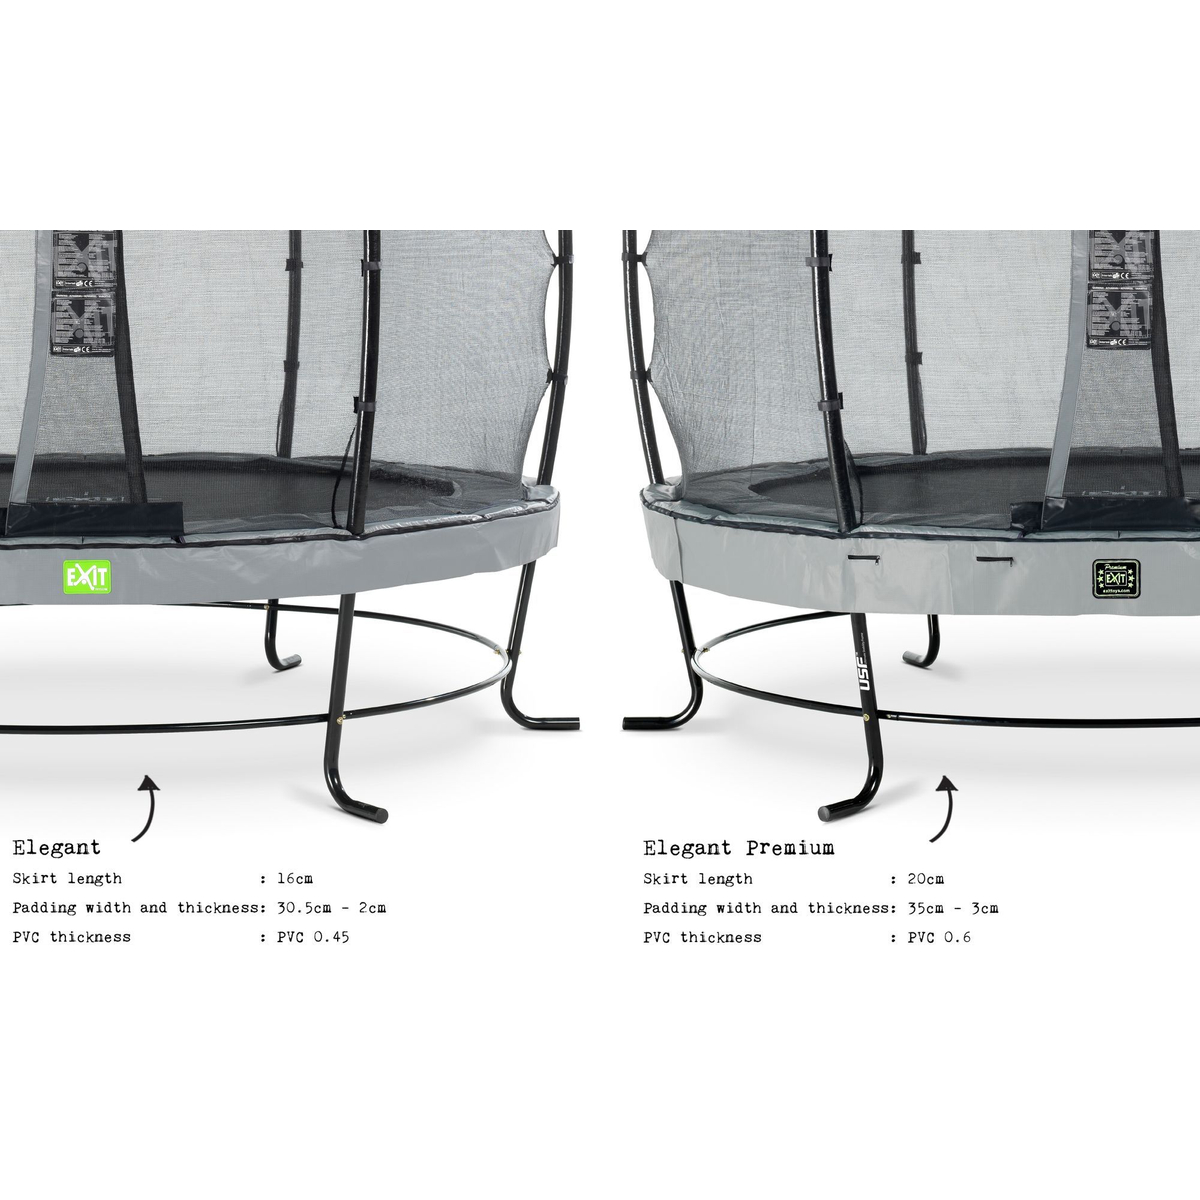 Exit Elegant Premium Trampoline 427 + Safetynet Deluxe Grijs